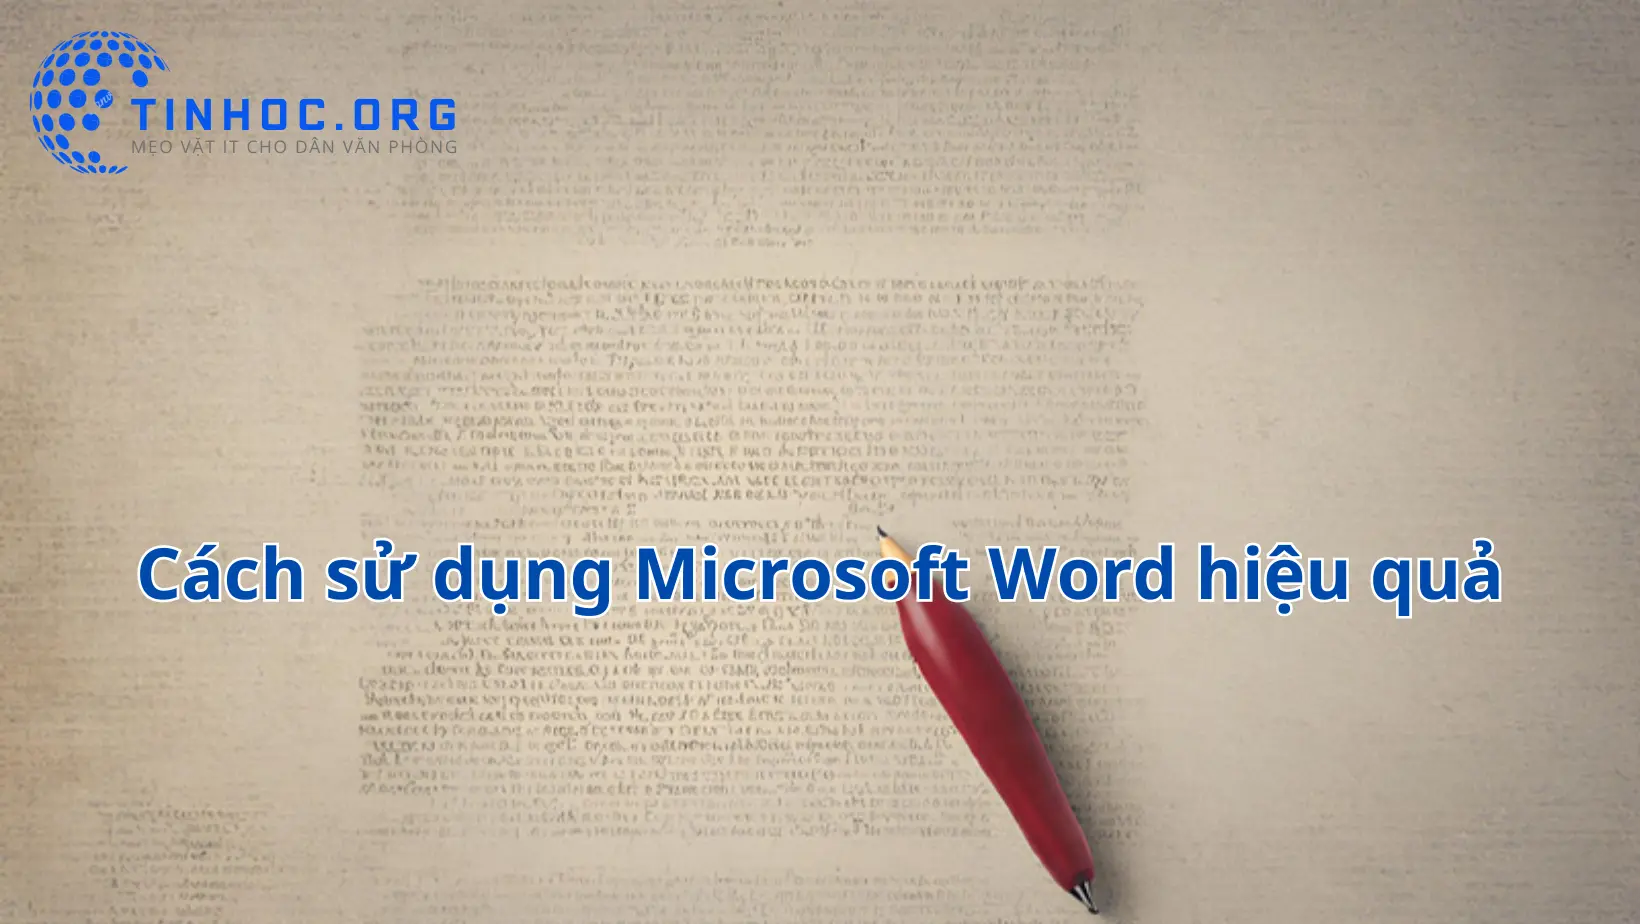 Tối ưu hóa Microsoft Word: Mẹo vặt định dạng, tổ chức, và quản lý tài liệu, giúp tiết kiệm thời gian và tăng hiệu suất.